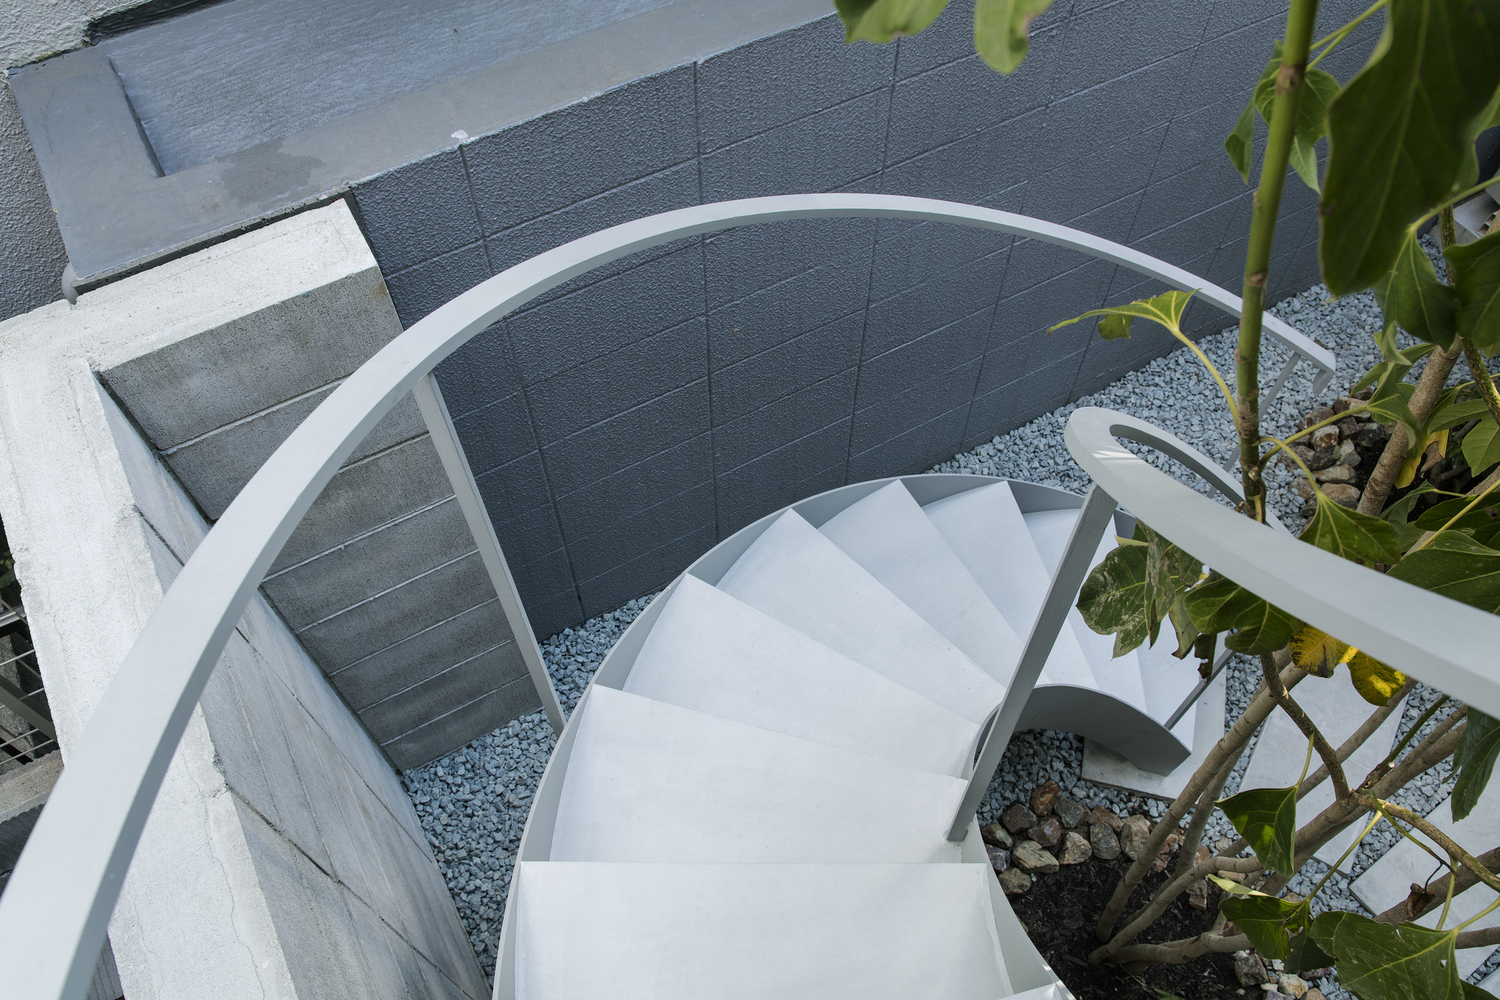 Cầu thang xoắn ốc nhỏ gọn bằng kim loại sơn trắng cung cấp lối tiếp cận lên tầng trên từ sân trước ngôi nhà ống điển hình ở Nhật Bản.